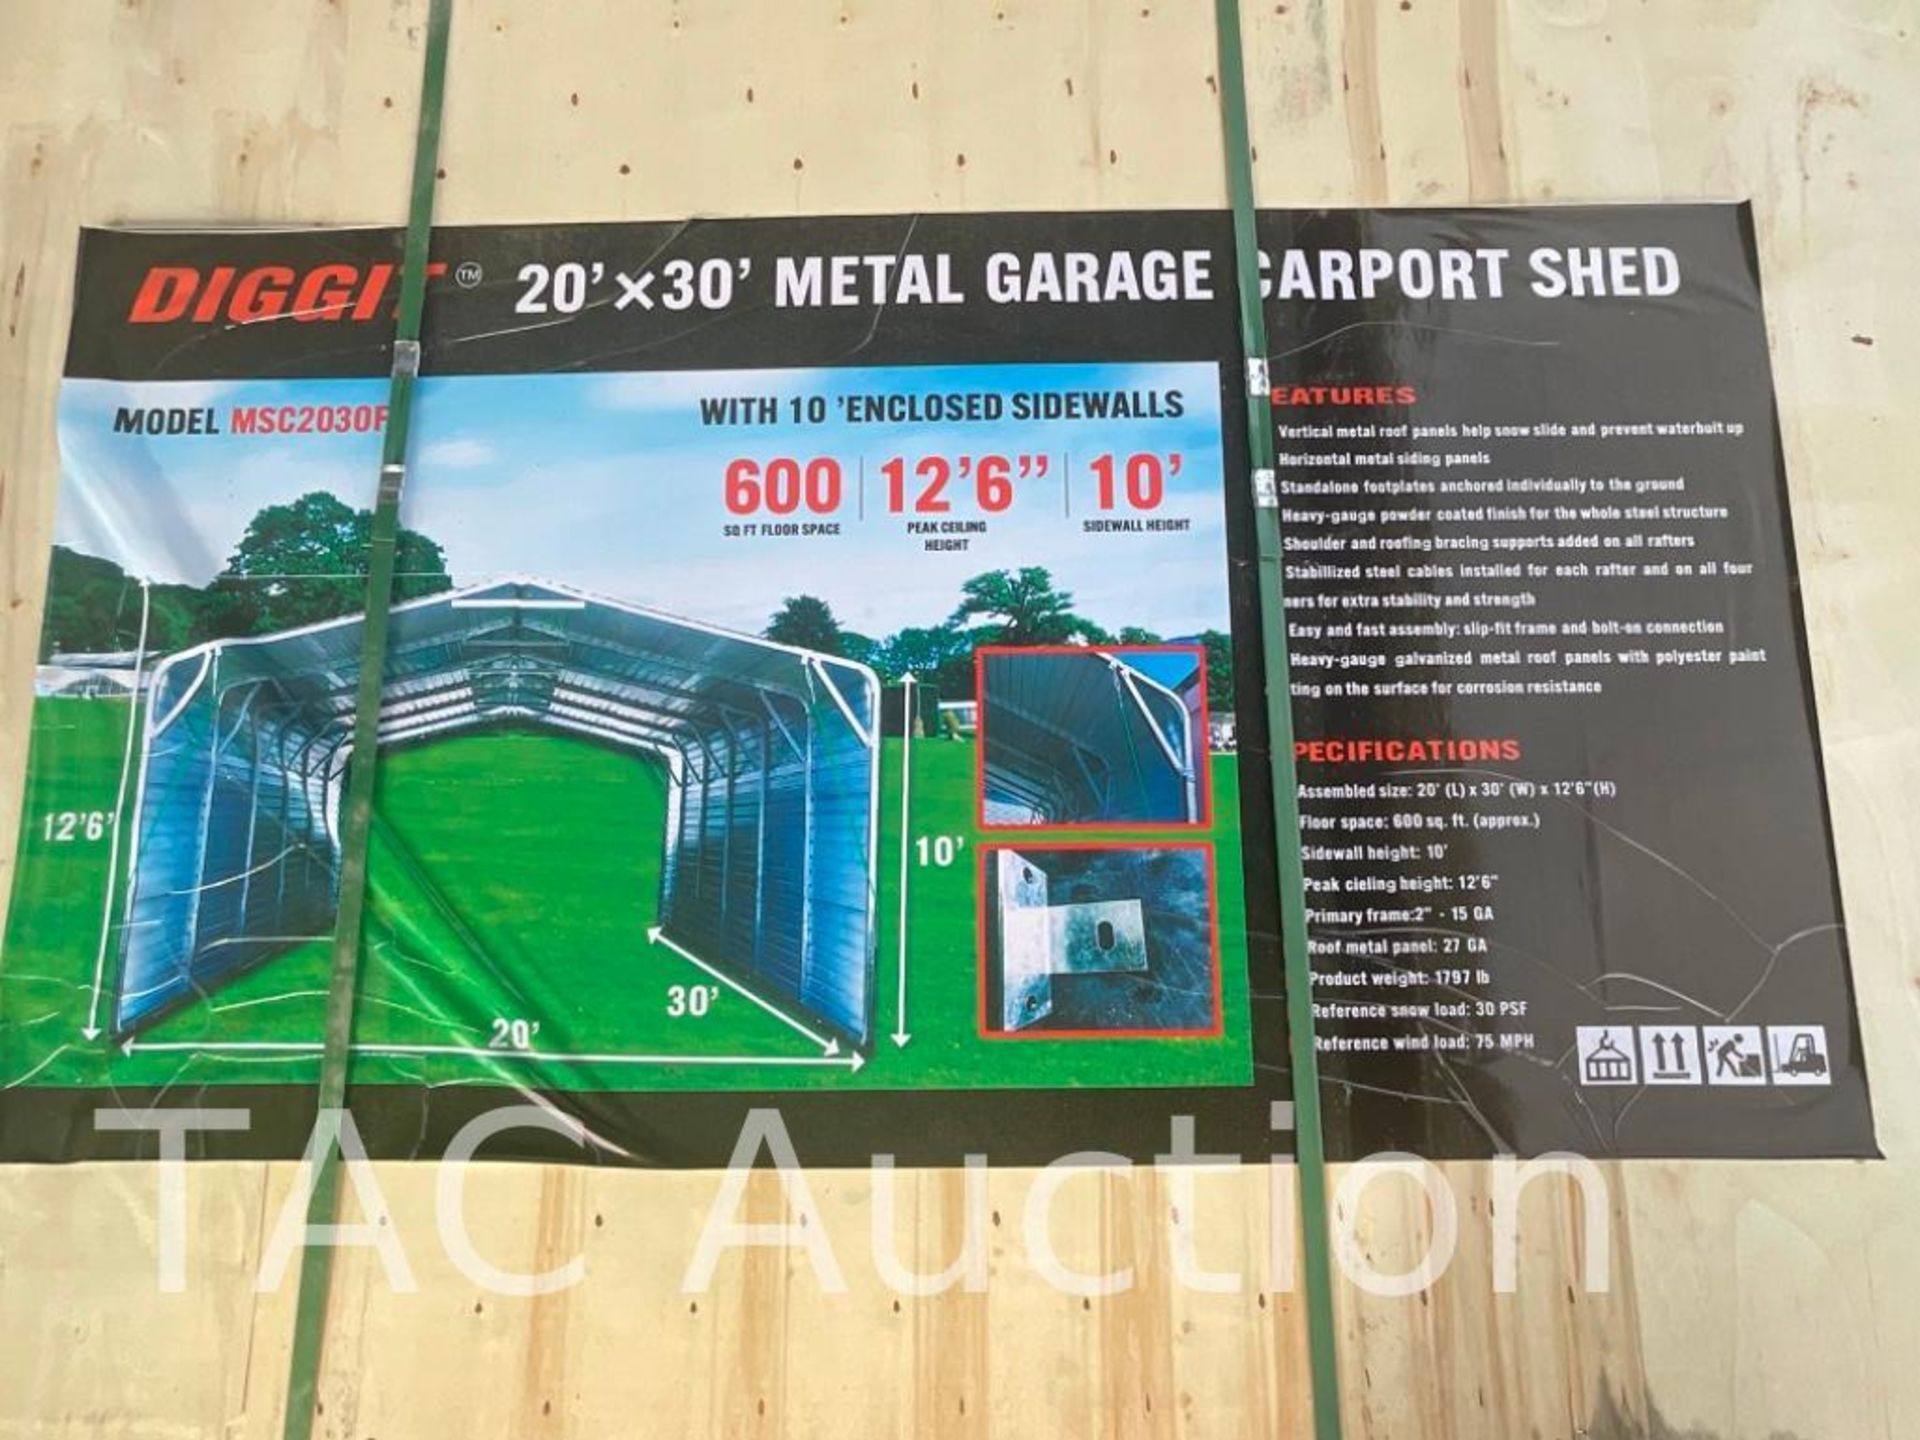 New 20ft X 30ft Metal Garage Carport Shed - Image 3 of 4